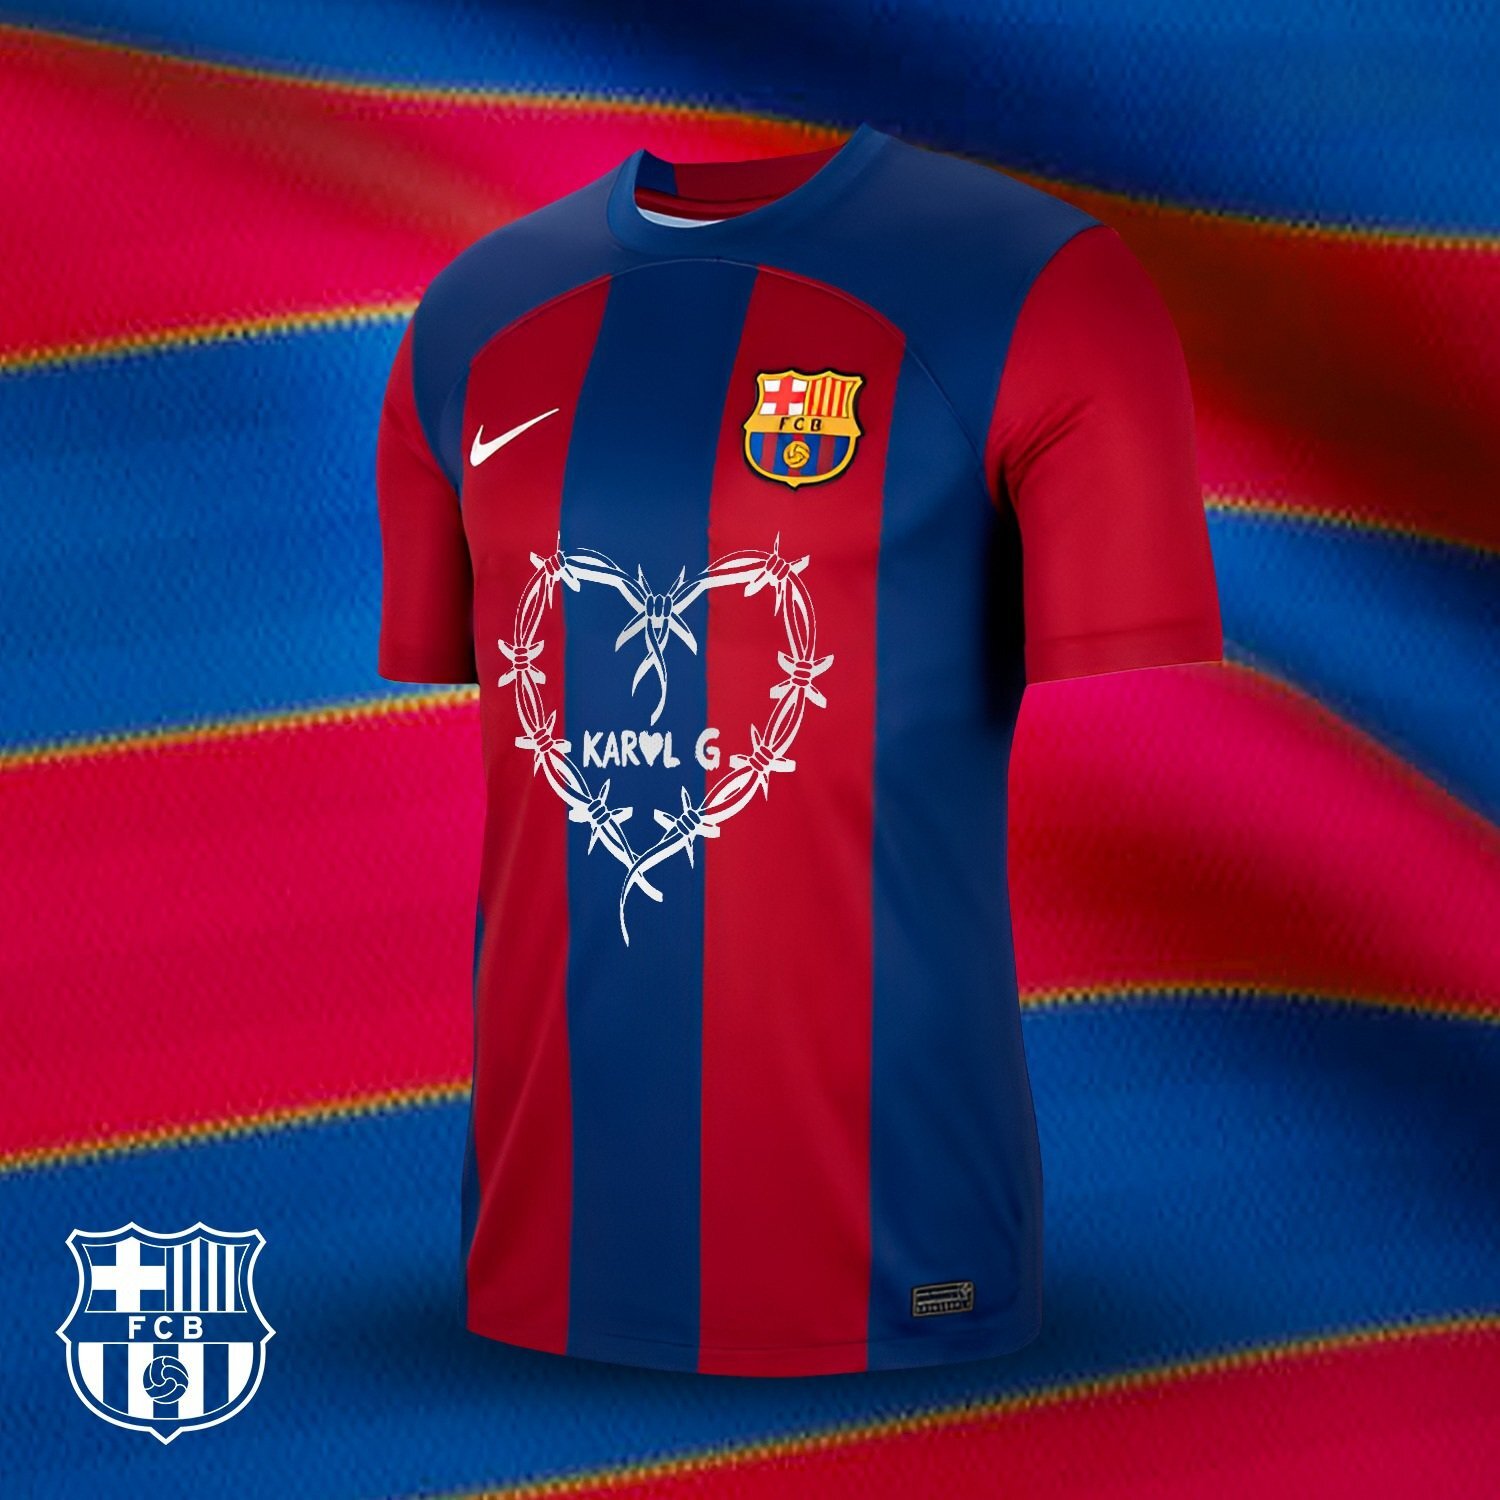 Camiseta de Barcelona con logo de Karol G 